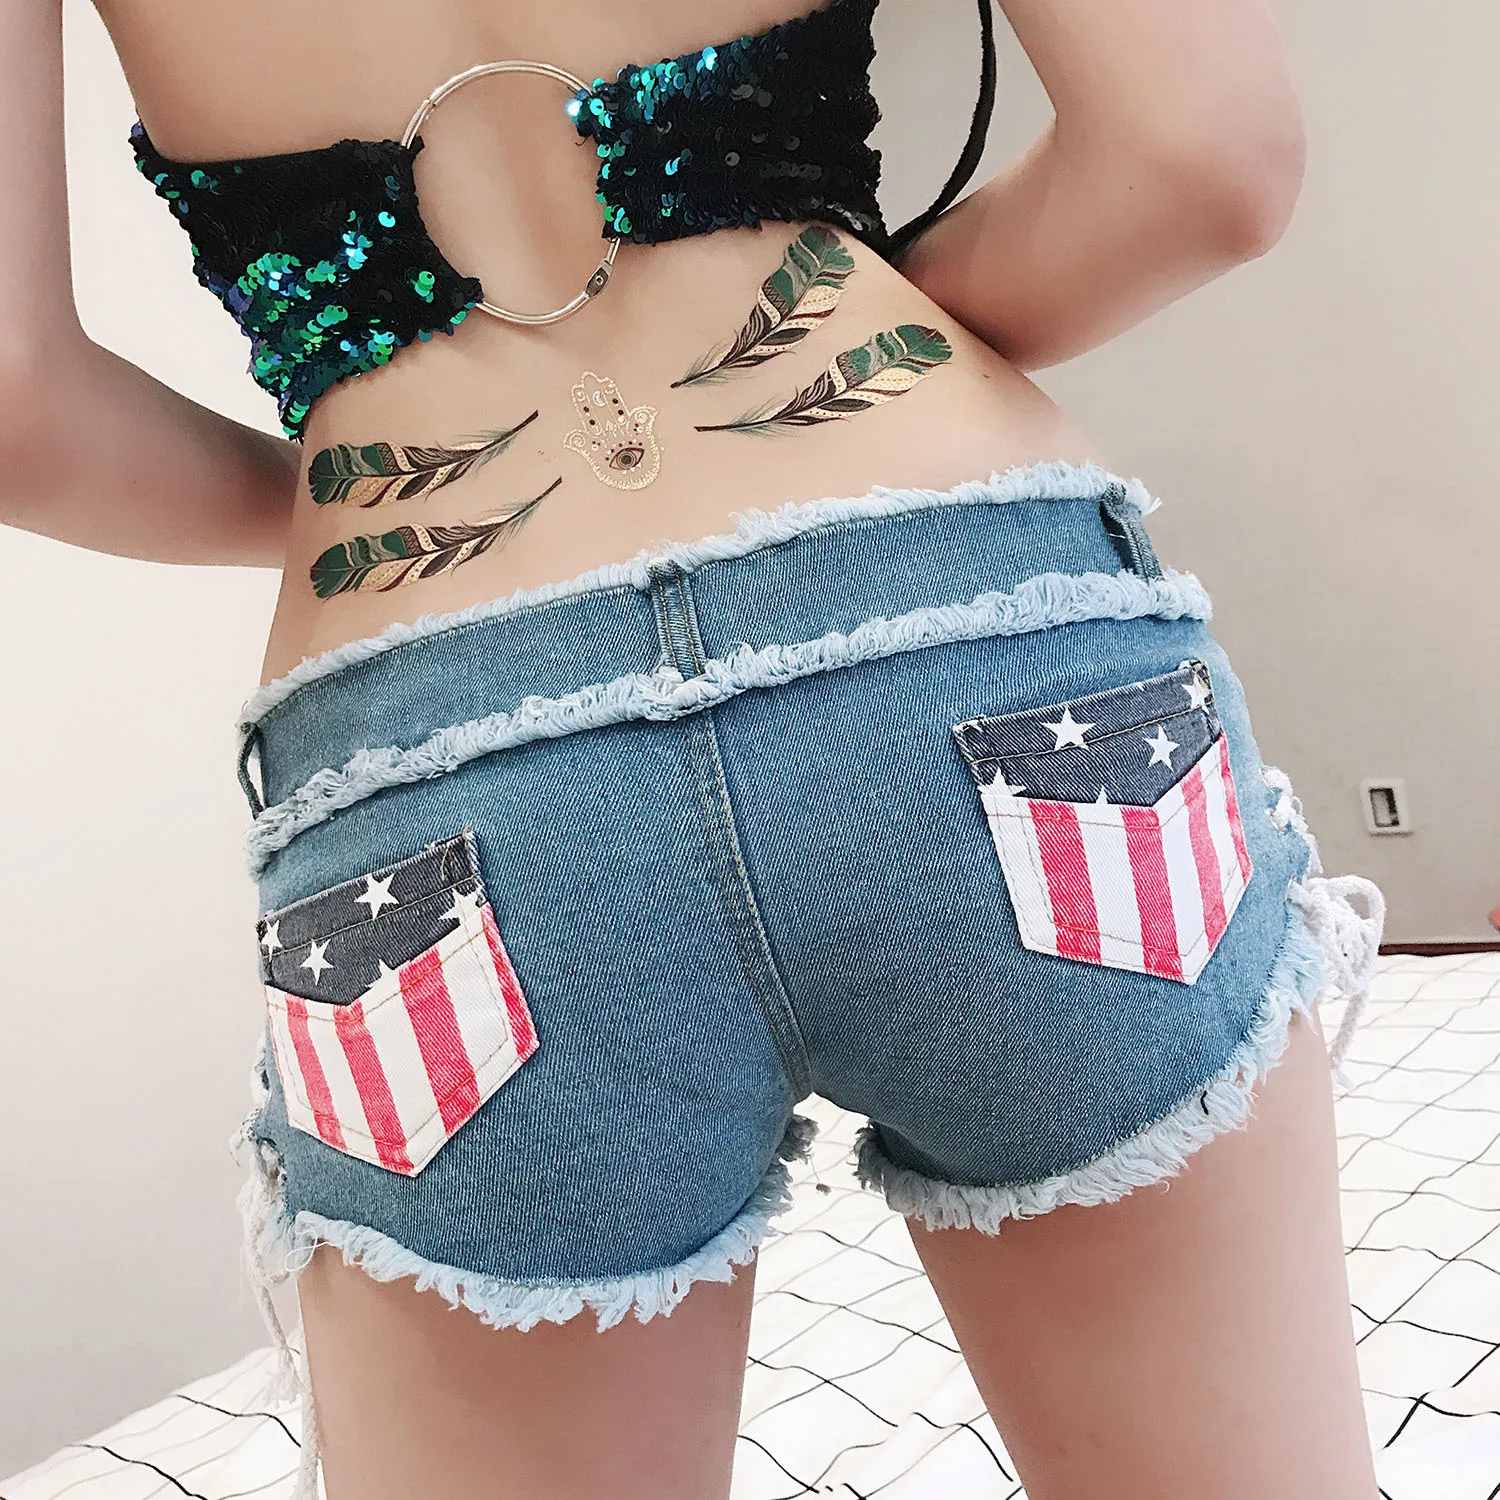 2019 г. женские Серебристые летние горячие шорты для женщин пикантные Hotpants Femme мода блесток леди ночной клуб Микро Мини Booty